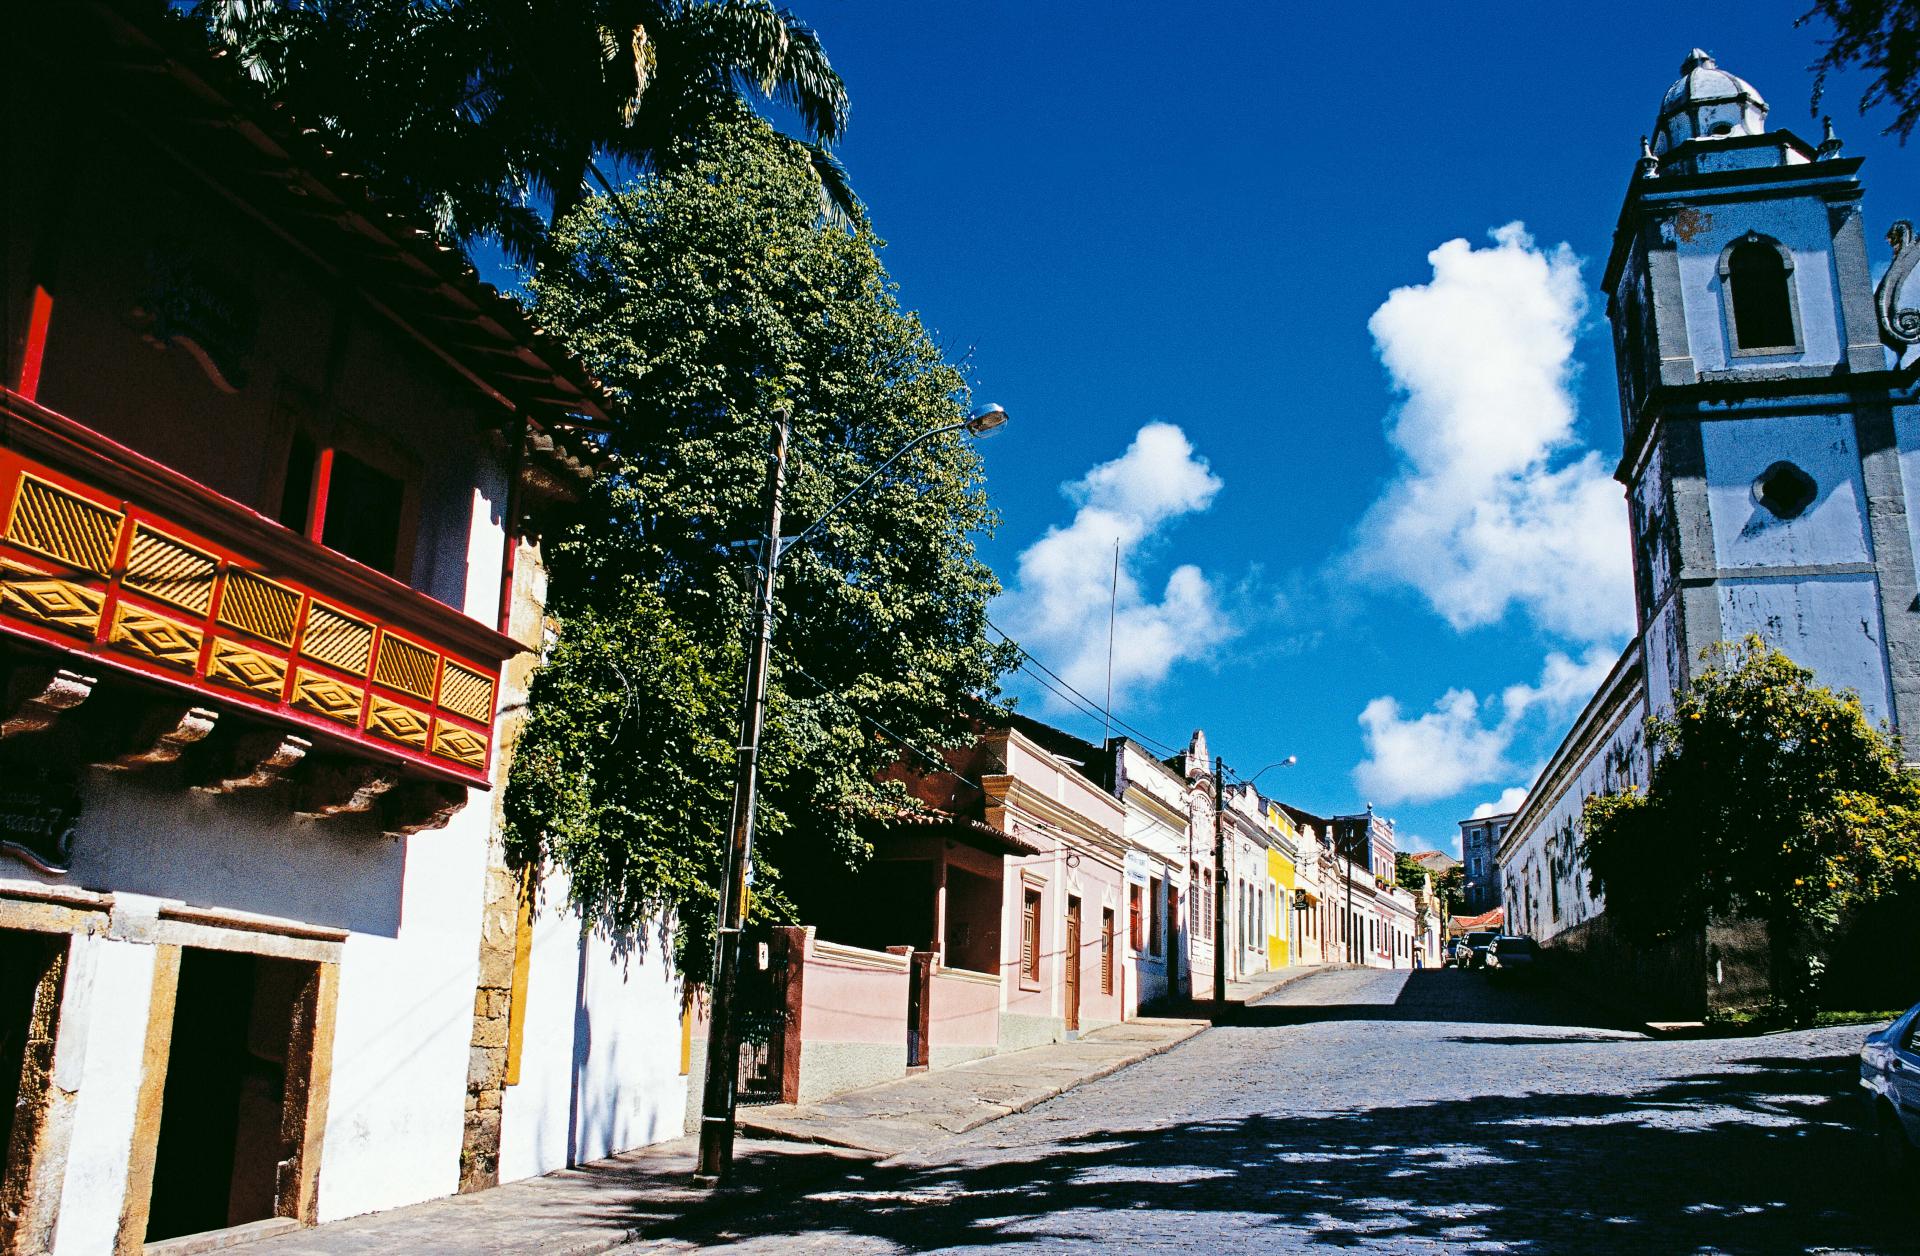 Historical center of Olinda